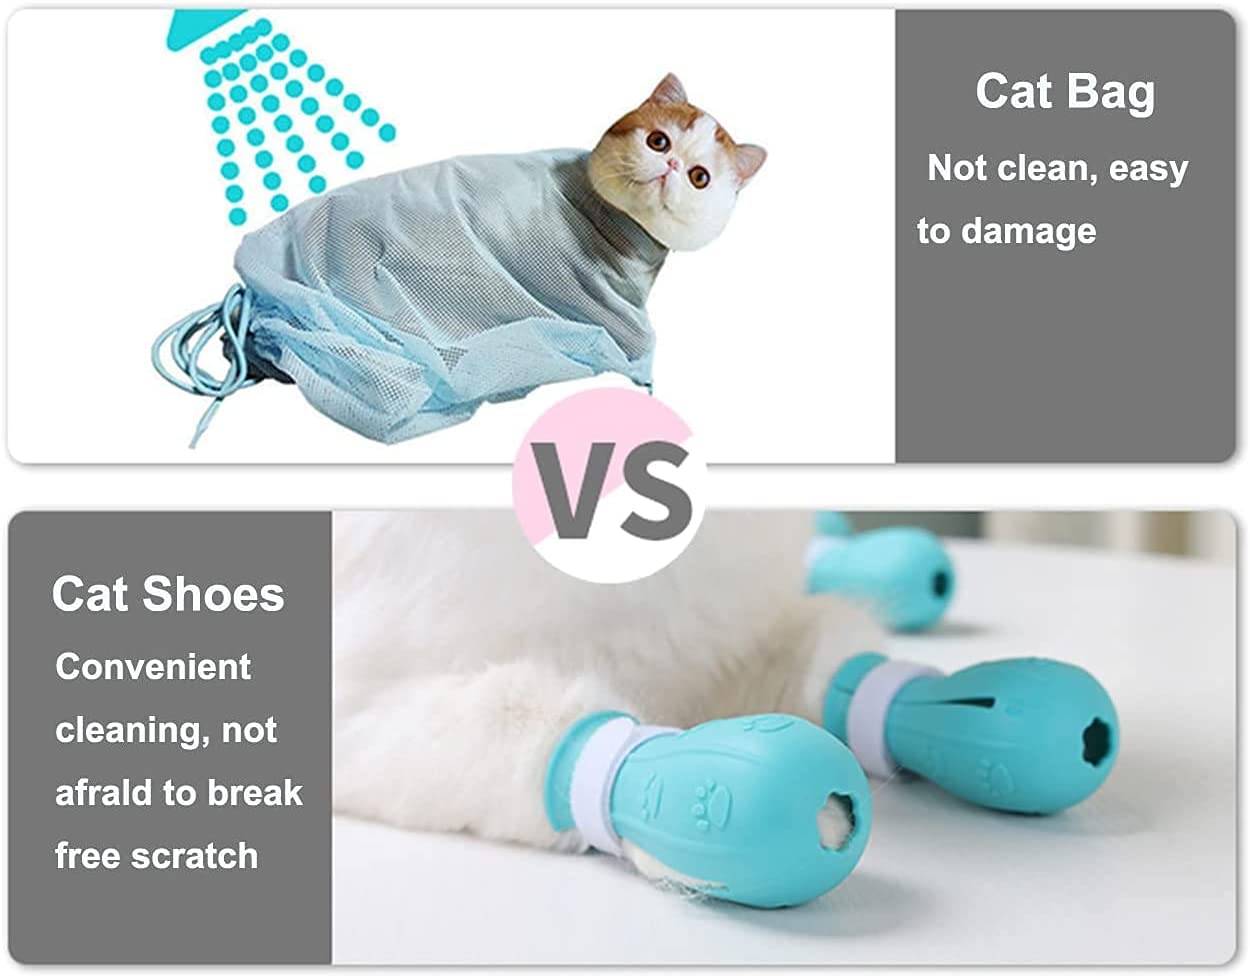  کفش های حمام گربه مناسب برای بیمارستان های حیوانات خانگی، فروشگاه های حیوانات خانگی، خانه های گربه، حمام های خانگی و غیره.